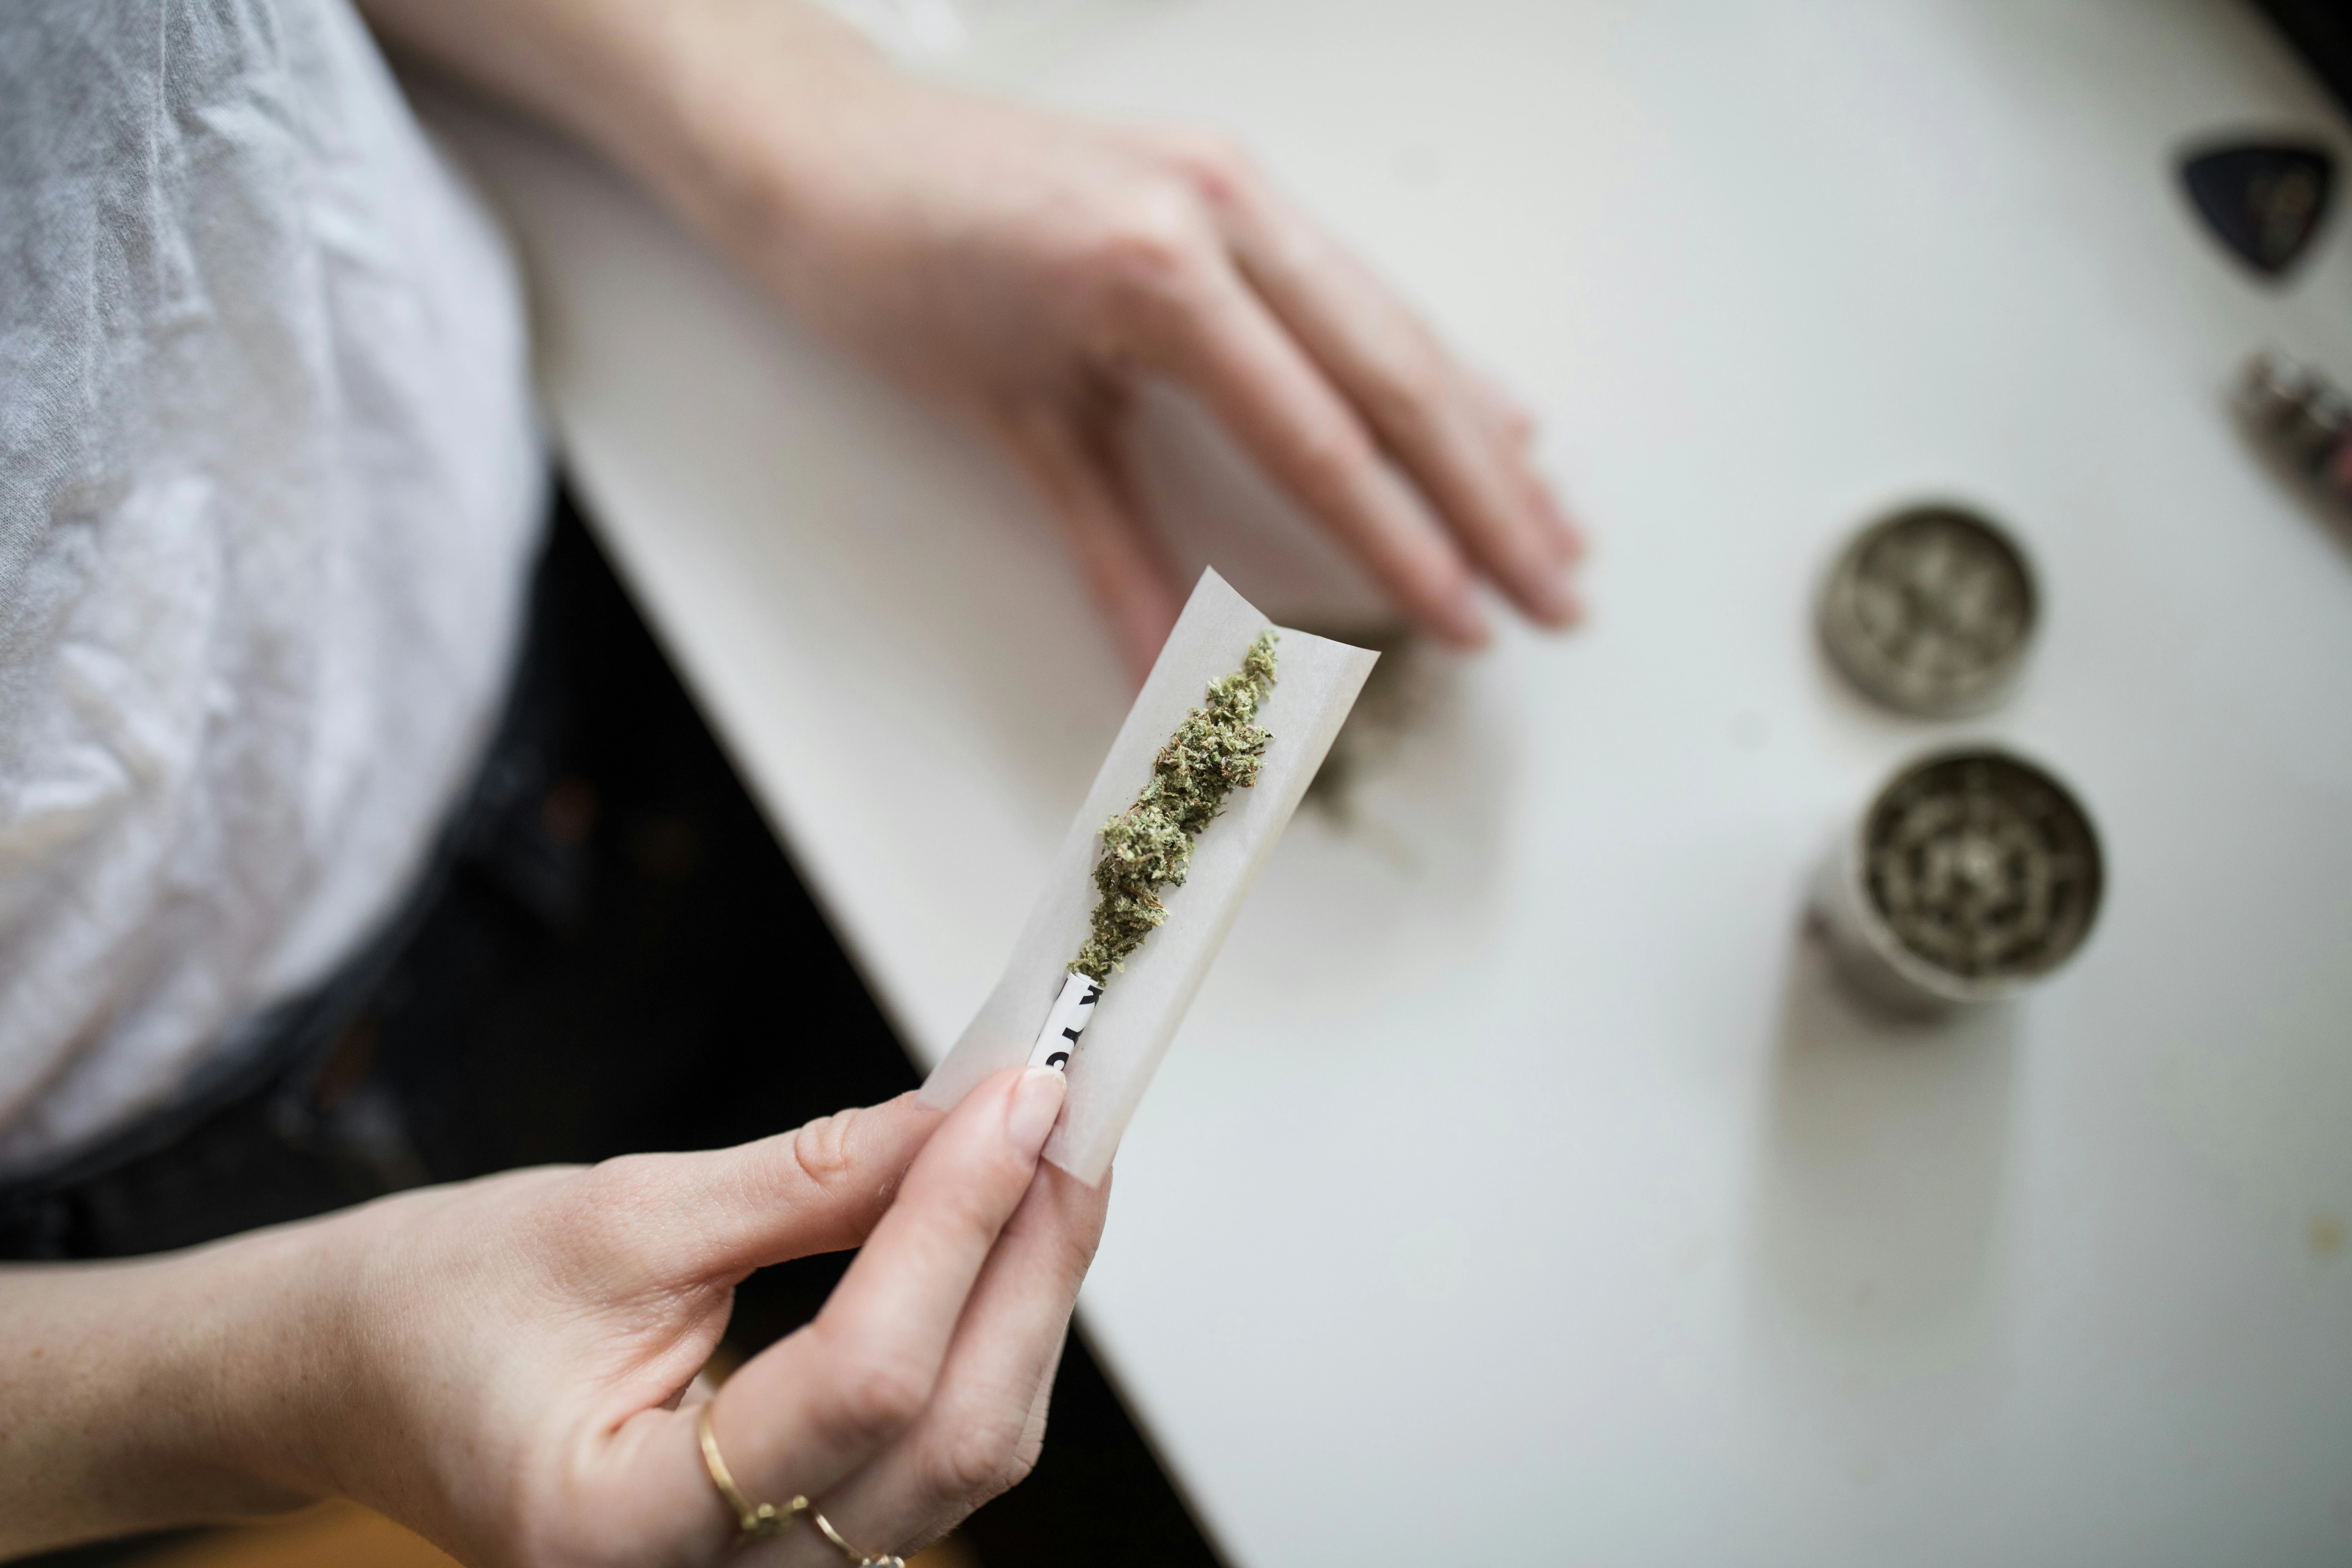 un joint de cannabis CBD est roulé sur une table